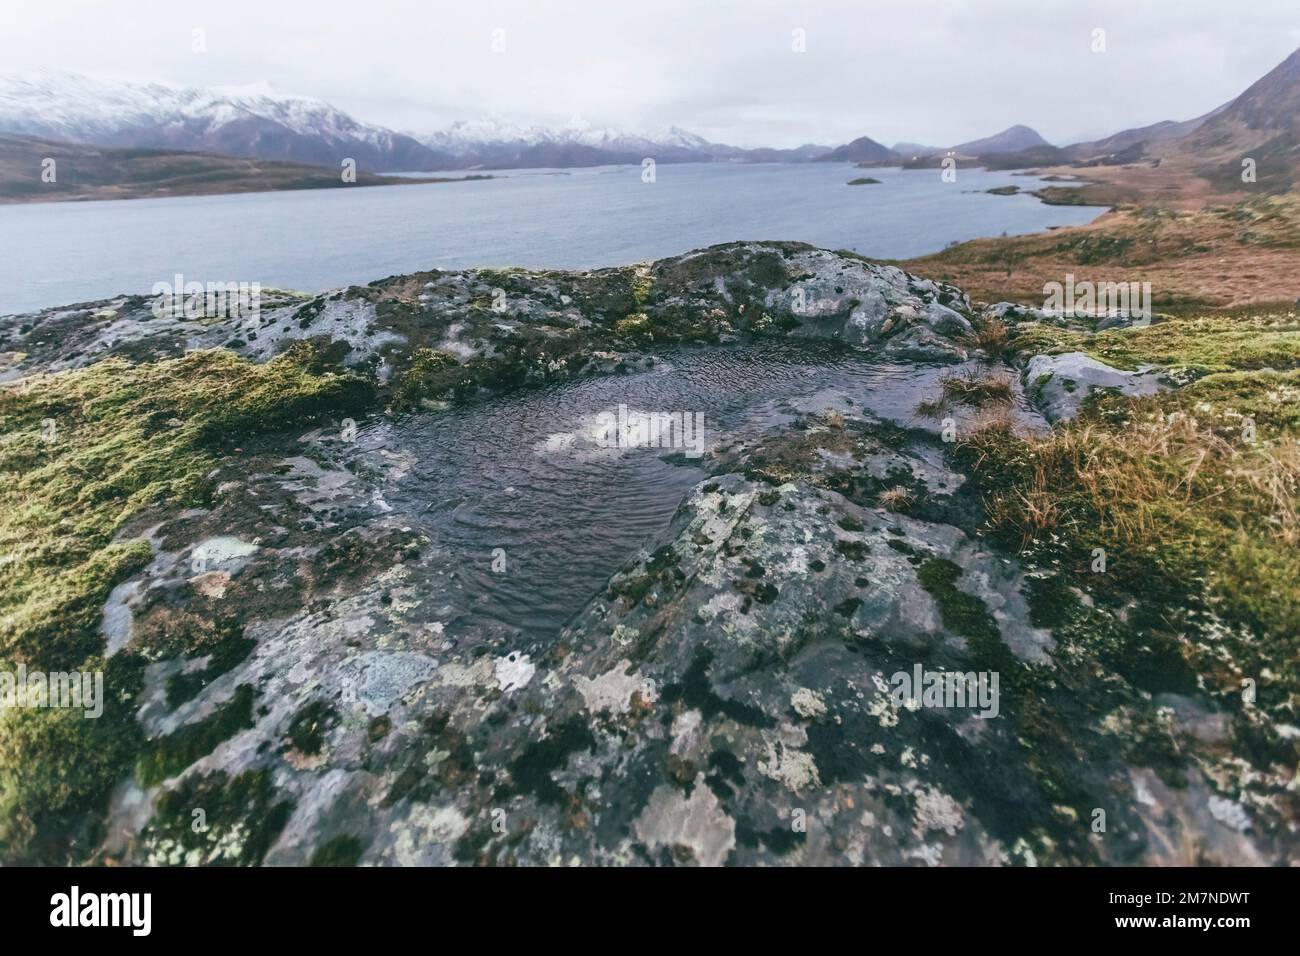 Pozza d'acqua nel paesaggio dei fiordi in autunno a Vesteralen, Norvegia, splendore dei colori del paesaggio nordico costiero con rocce, mare, acqua e muschio Foto Stock